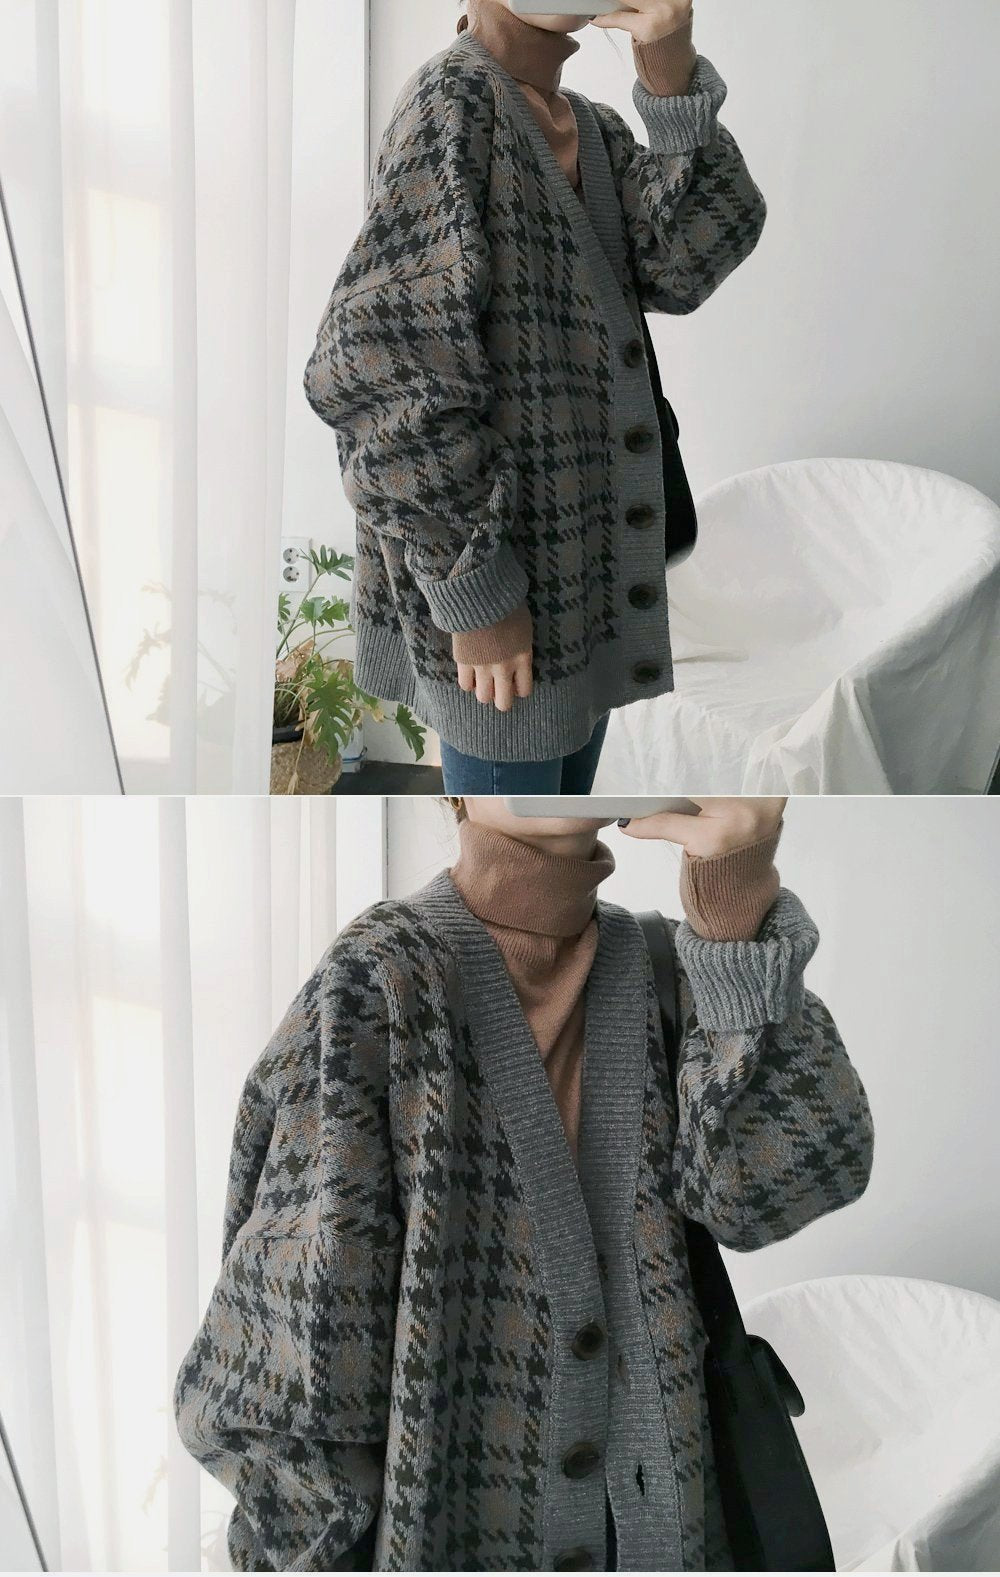 [Korean Style] Adela Oversized Plaid Cardigan